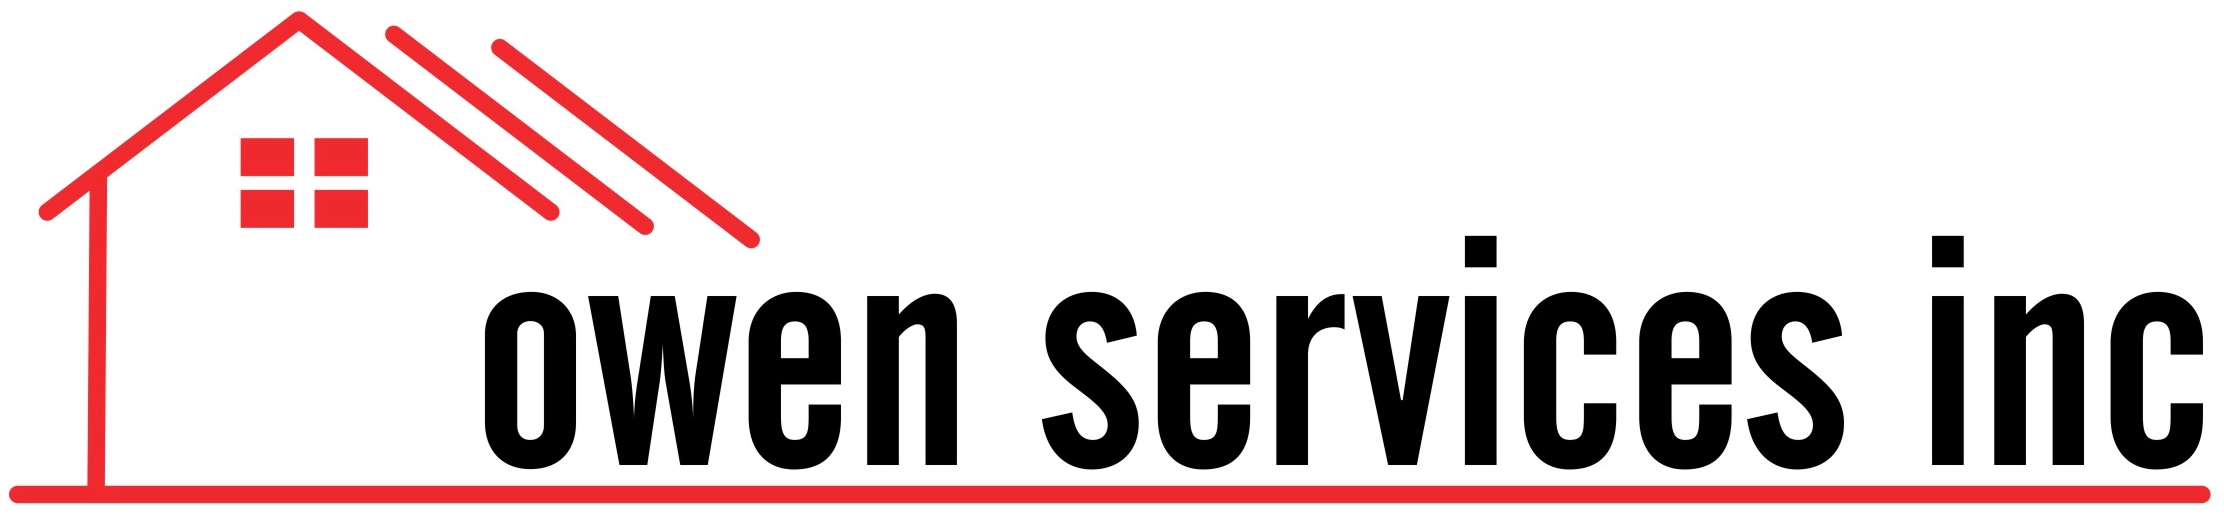 Owen Services, Inc. Logo